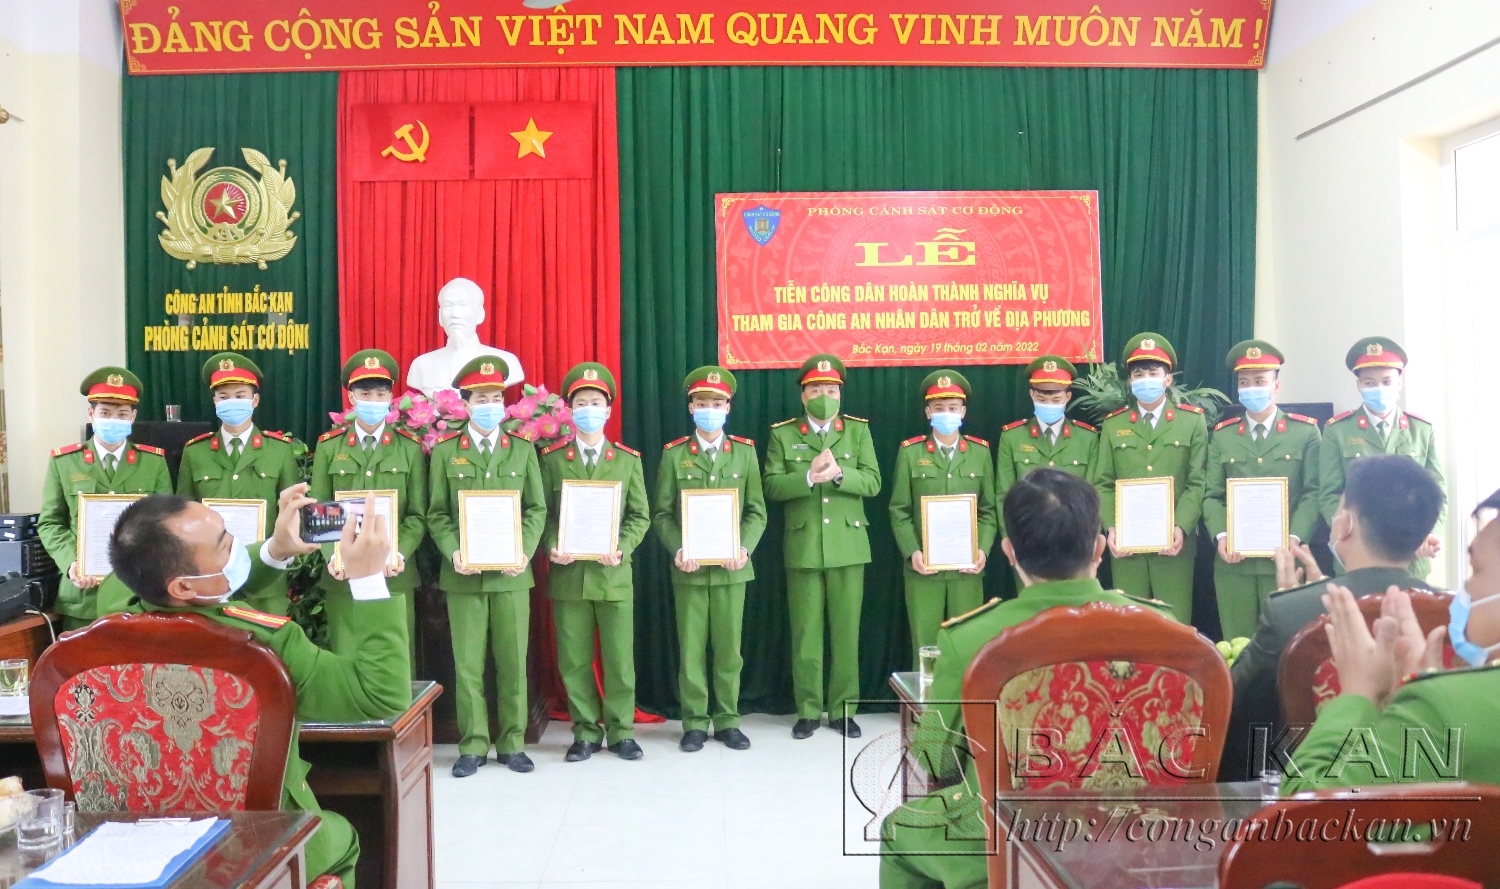 Thượng tá Ma Xuân Thịnh, Trưởng phòng Cảnh sát cơ động trao quyết định xuất ngũ cho chiến sĩ hoàn thành nghĩa vụ CAND.